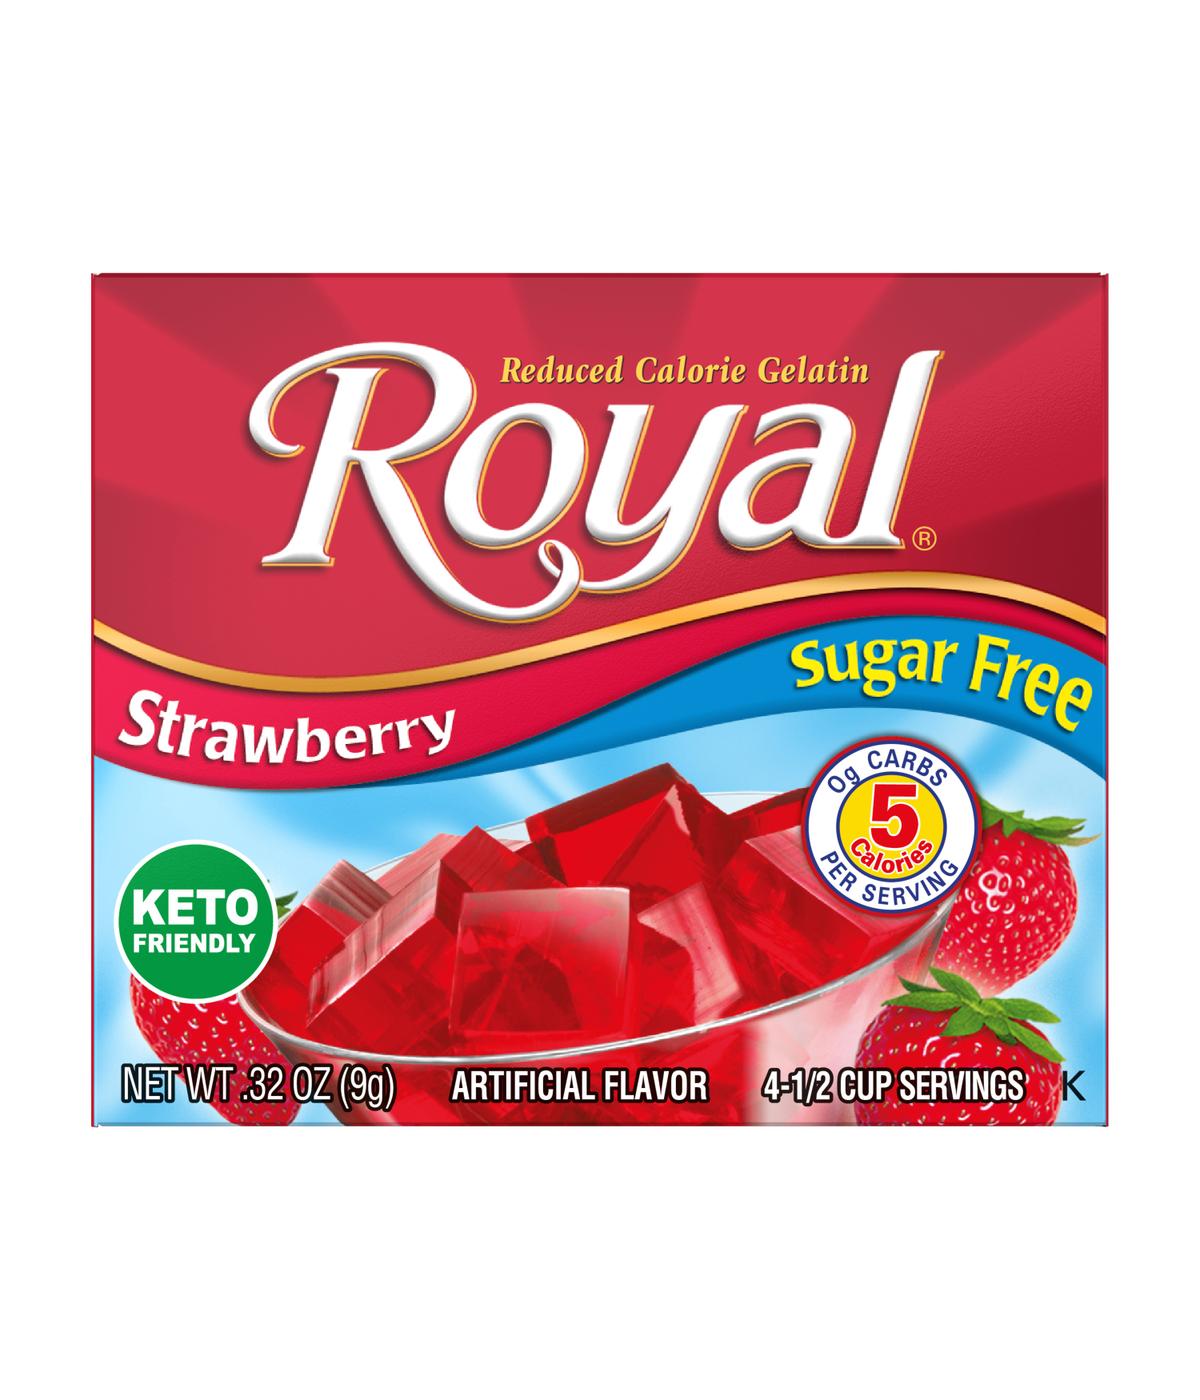 Royal Gelatin - Sugar Free Strawberry; image 1 of 2